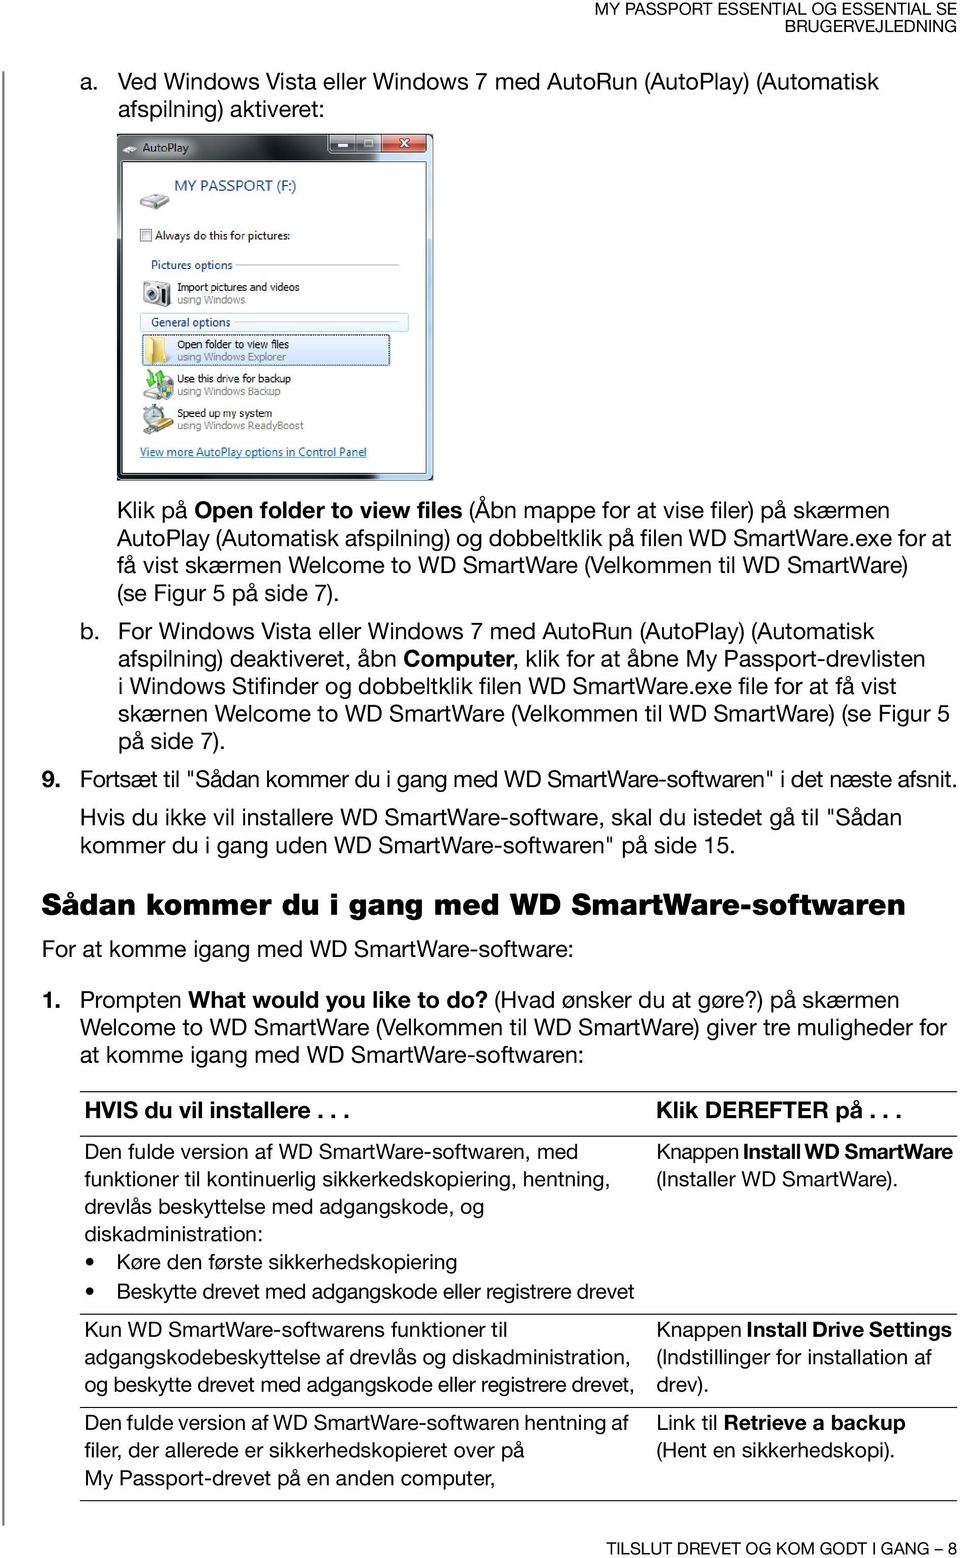 For Windows Vista eller Windows 7 med AutoRun (AutoPlay) (Automatisk afspilning) deaktiveret, åbn Computer, klik for at åbne My Passport-drevlisten i Windows Stifinder og dobbeltklik filen WD